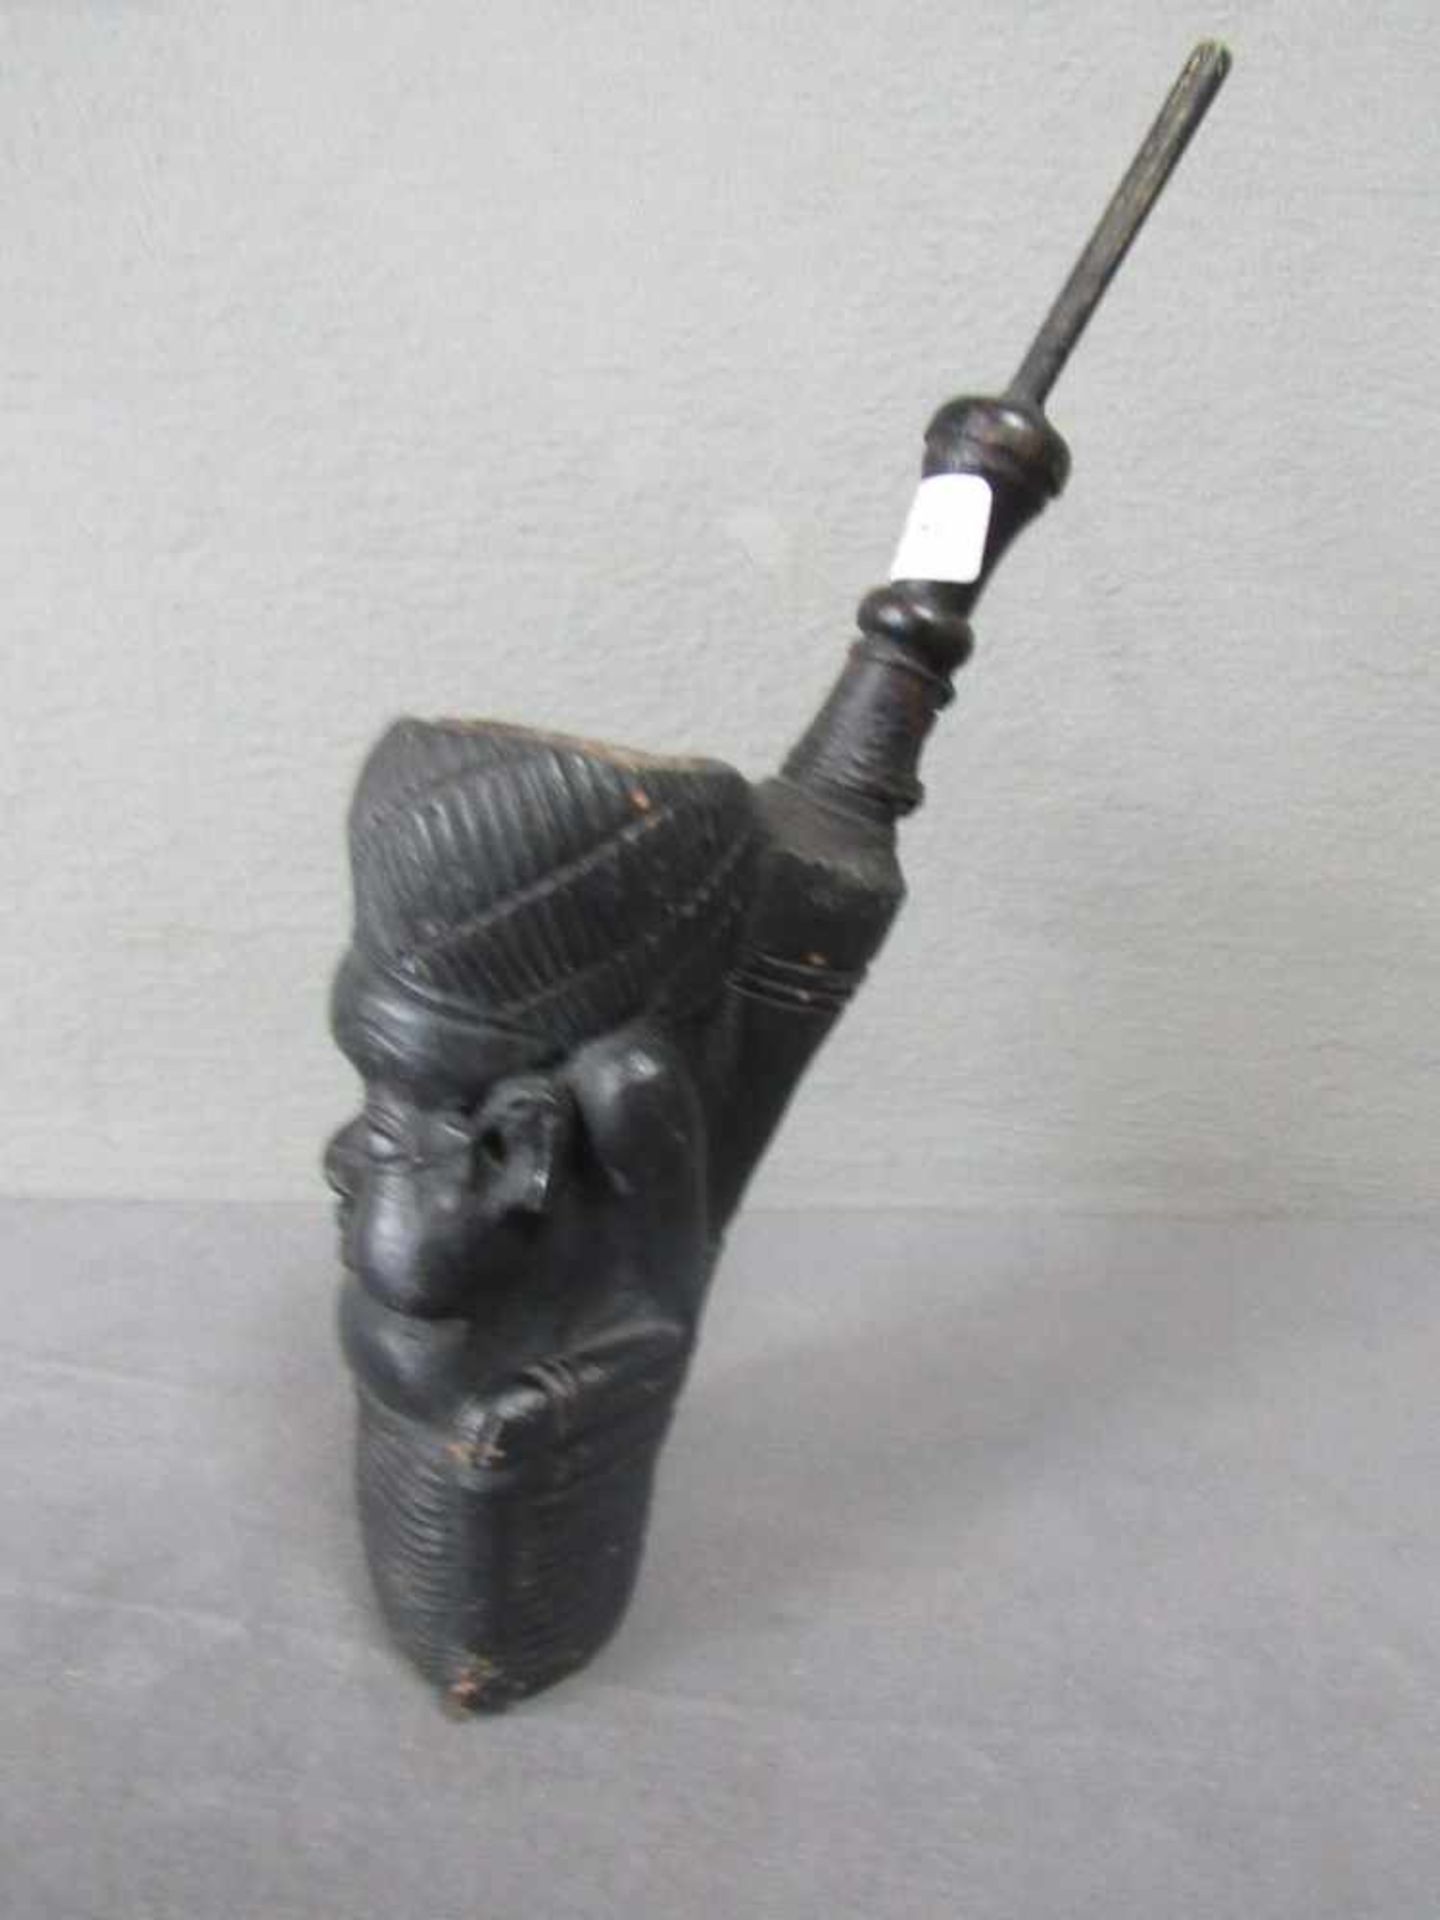 Antike afrikanische Pfeiffe um 1850 35cm hoch- - -20.00 % buyer's premium on the hammer price19.00 % - Image 2 of 3